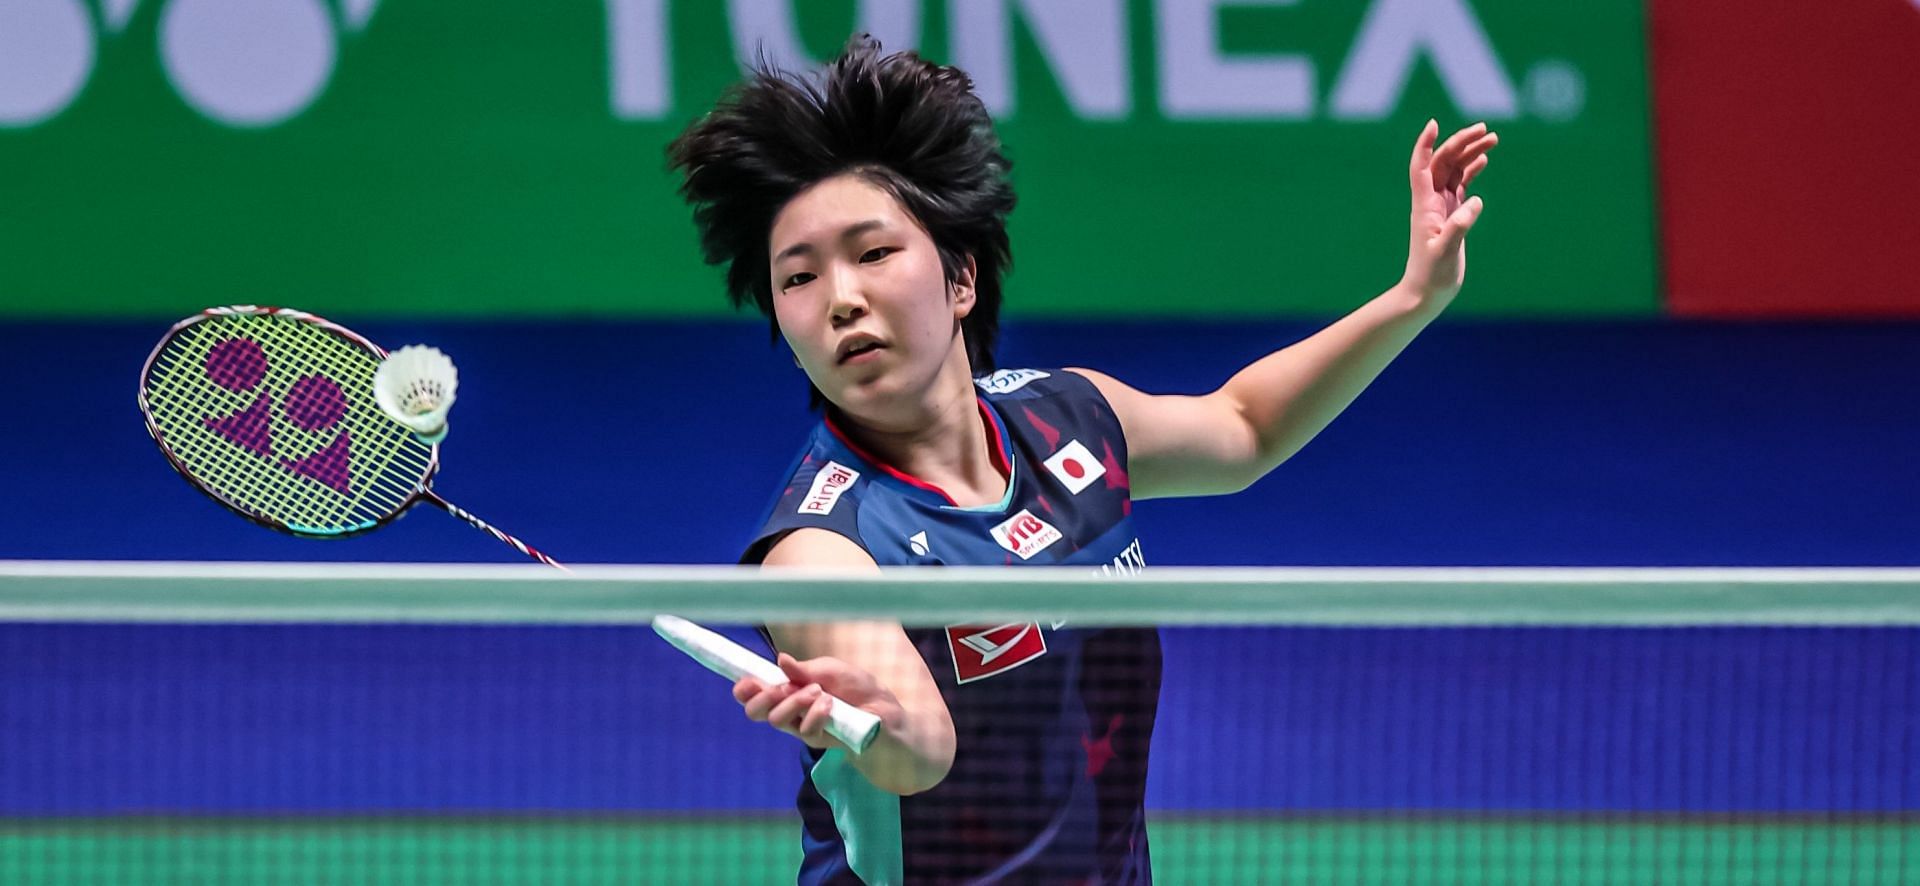 विश्व चैंपियन यामागूची दूसरी बार ऑल इंग्लैंड के फाइनल में पहुंची हैं।